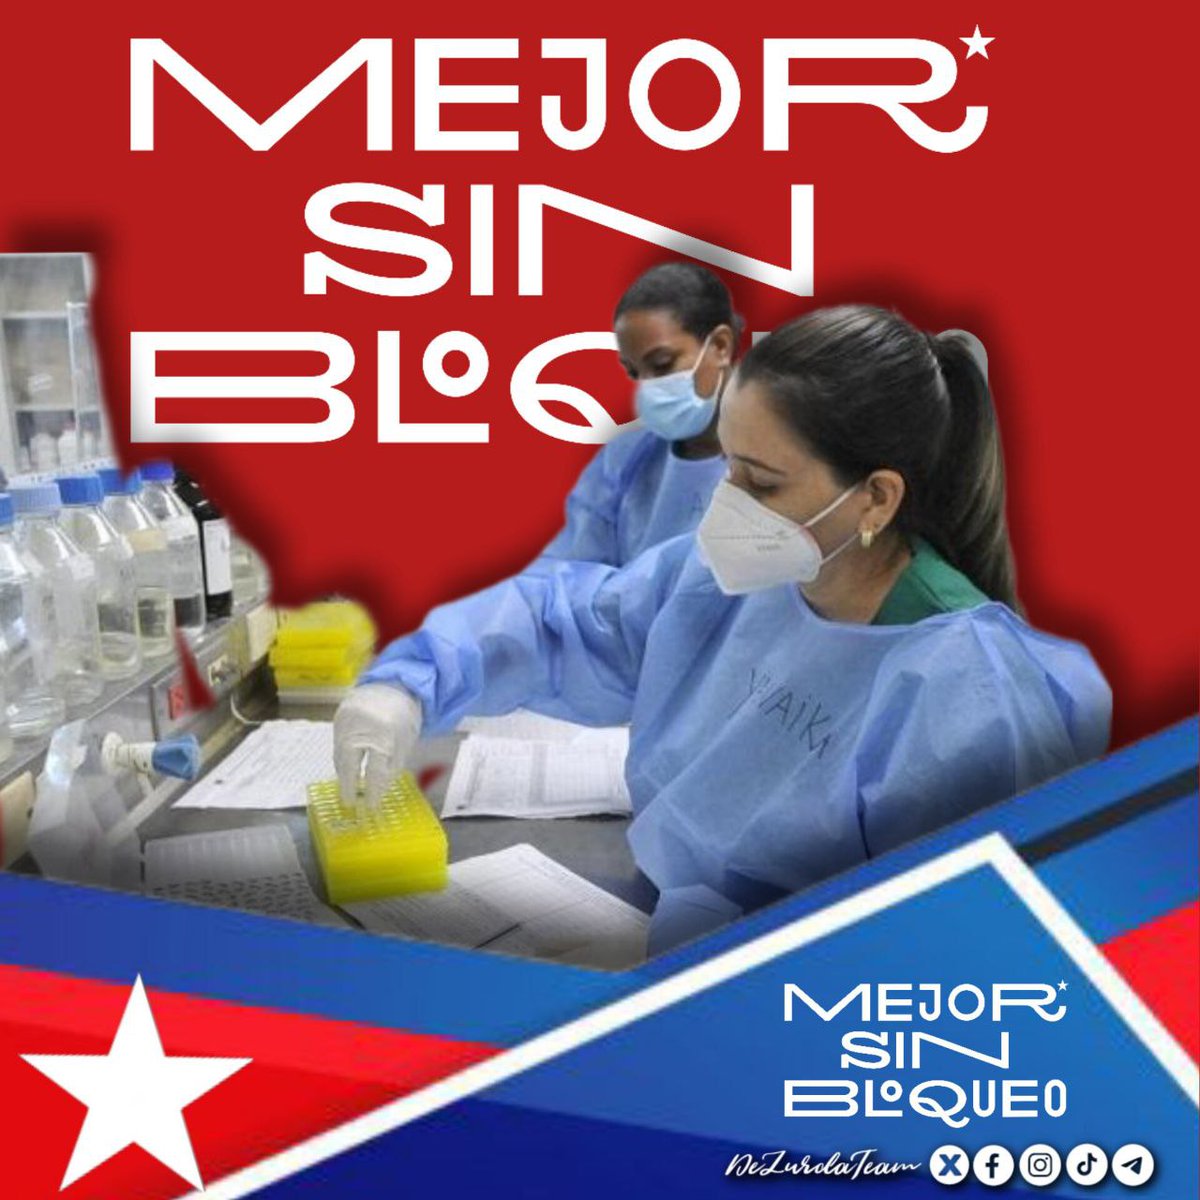 Juntos seguiremos trabajando por #CubaEnPaz #JuntosSomosMásFuertes #MejorSinBloqueo